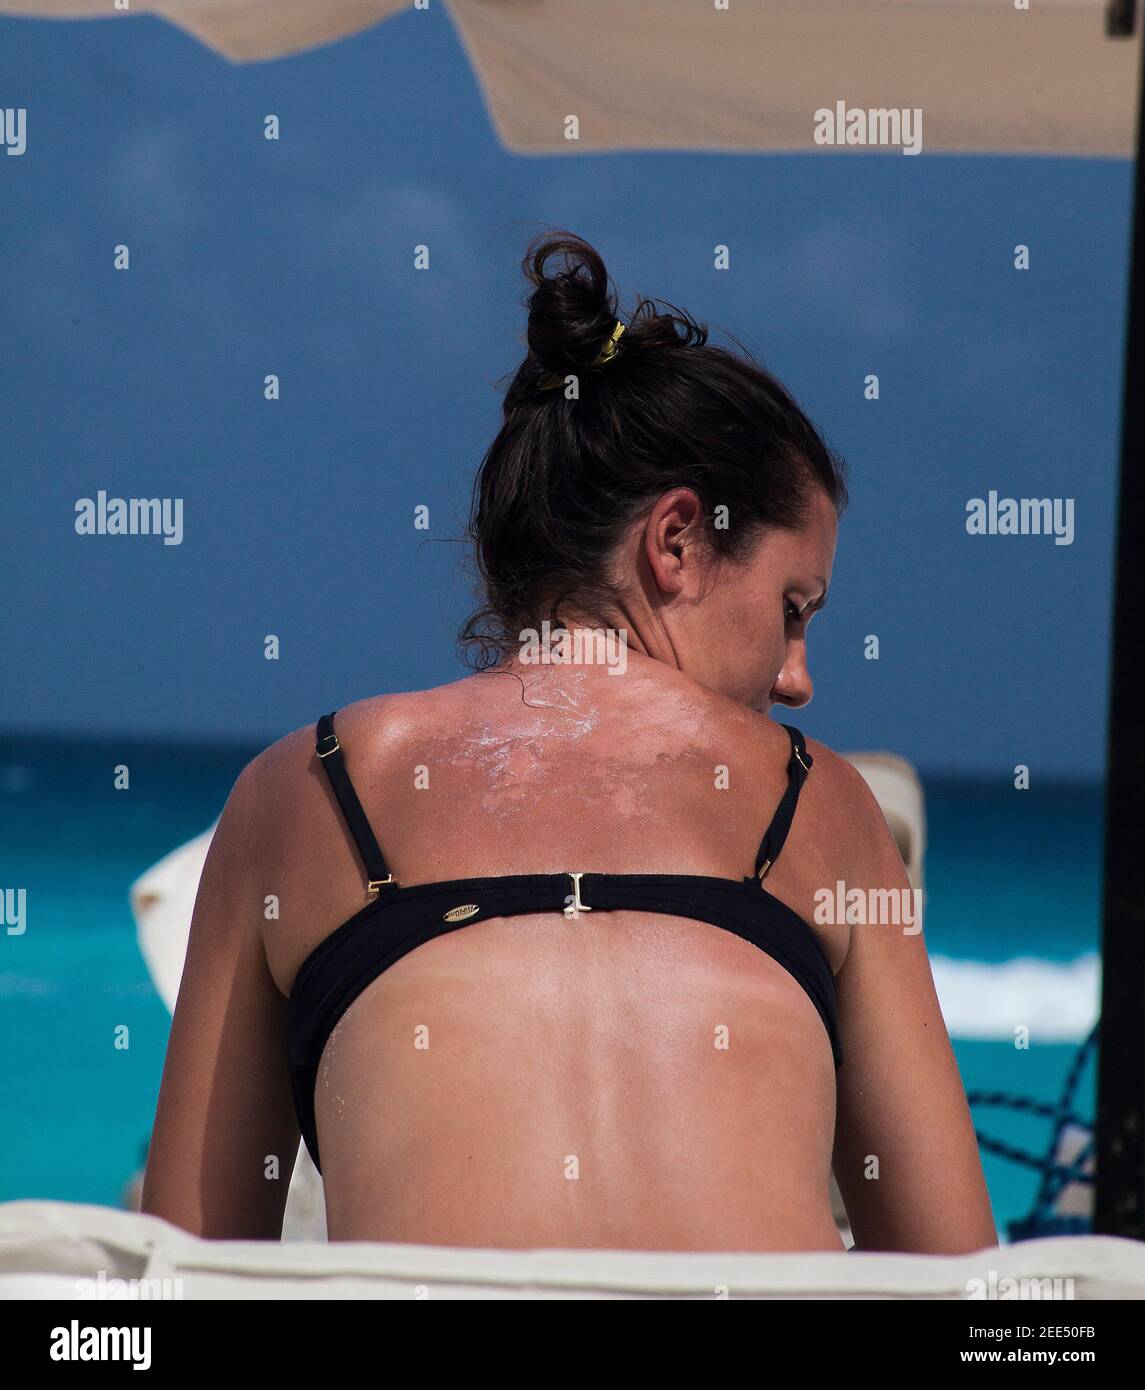 mujer con la espalda quemada por el sol Foto de stock